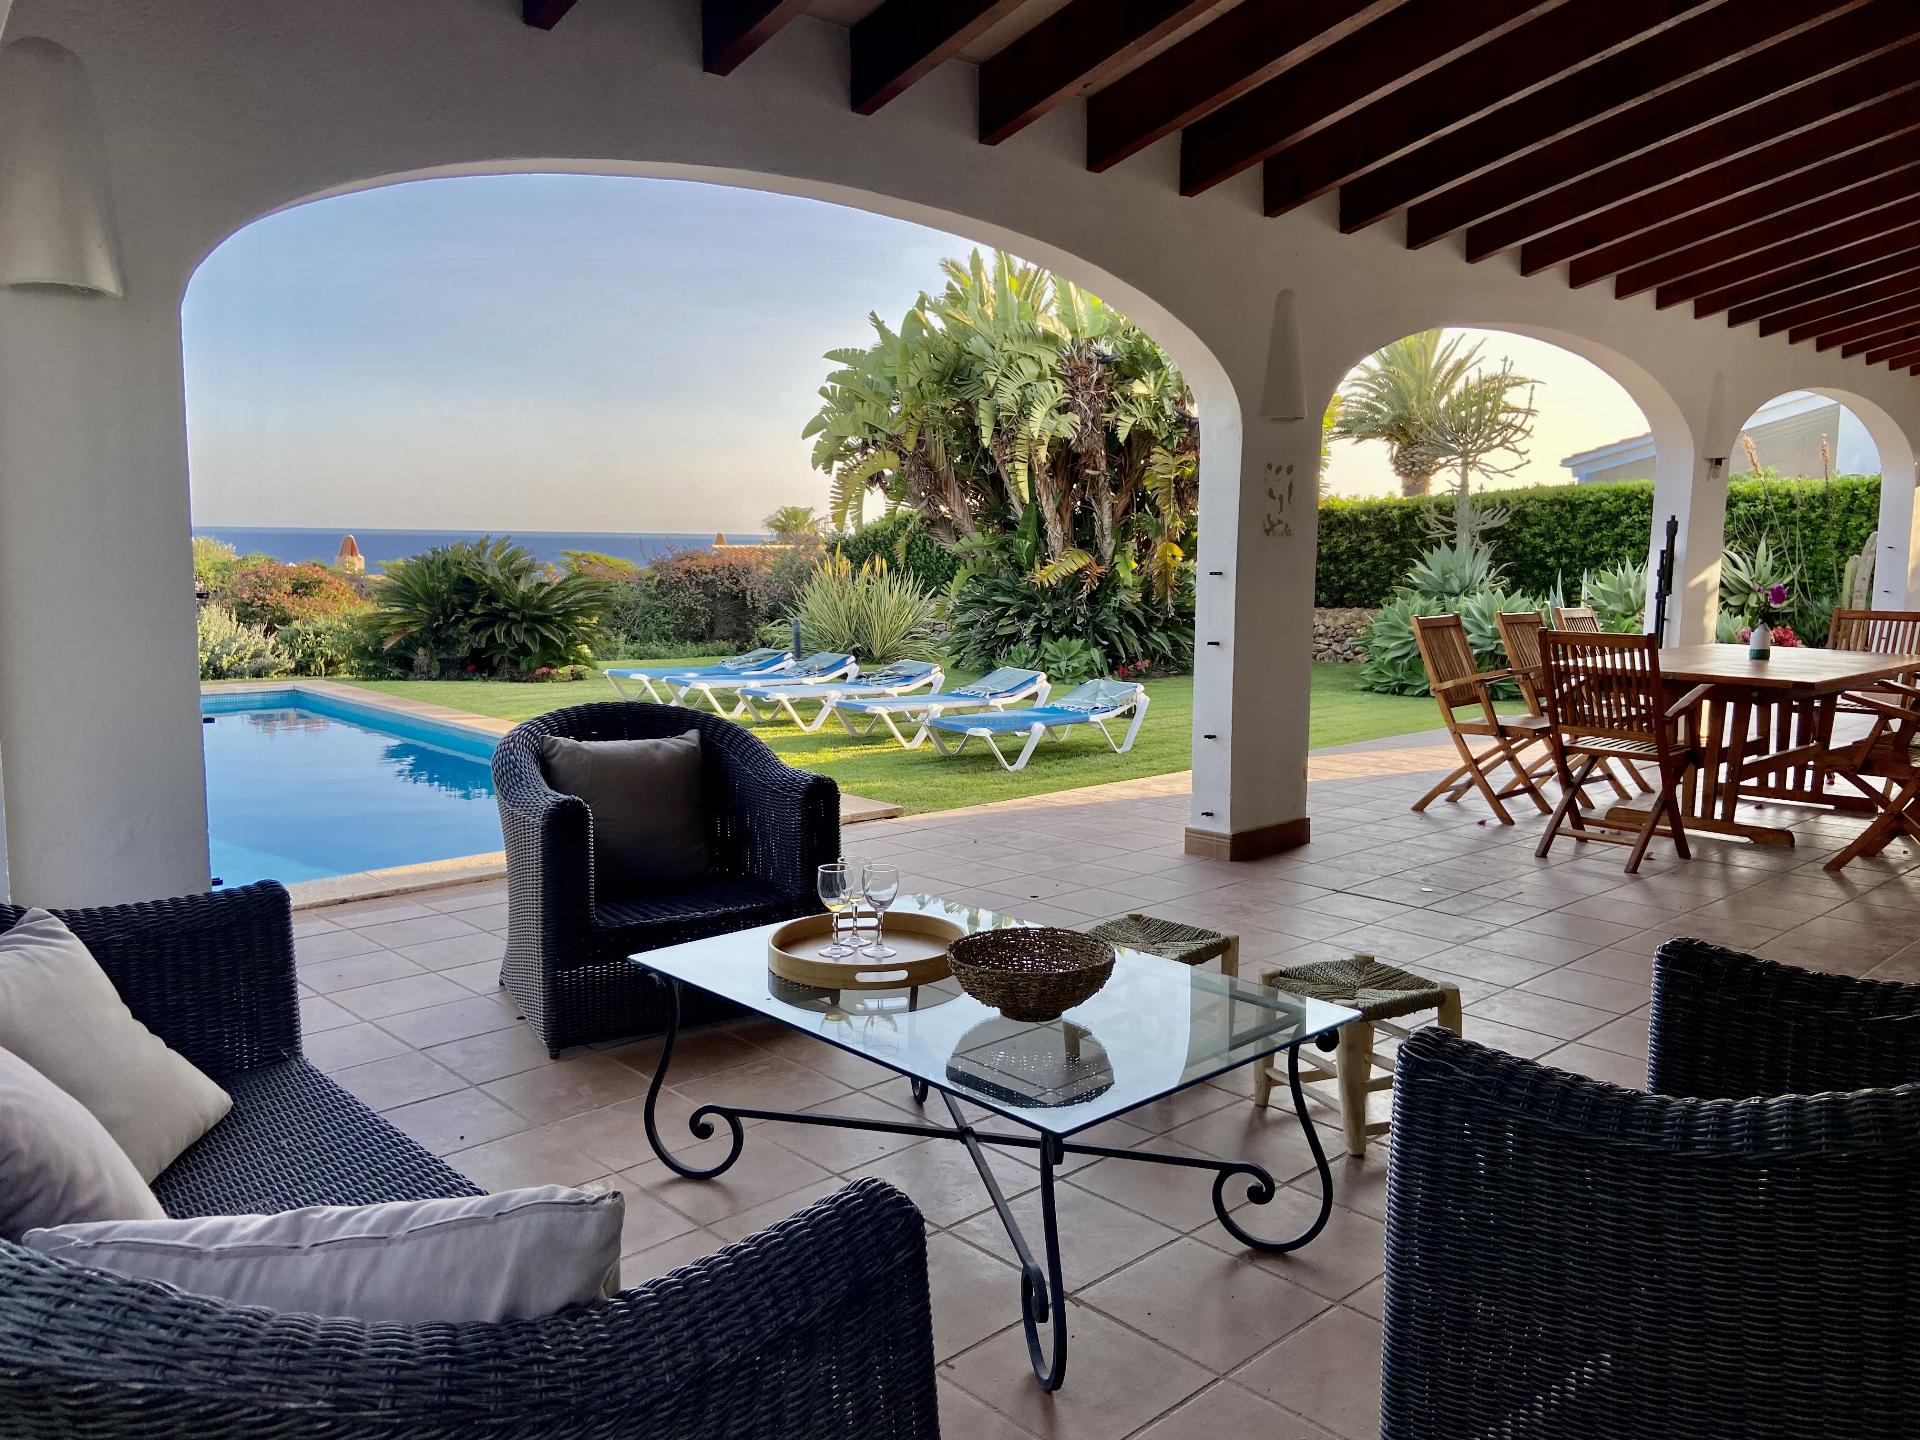 Minorque Binibica- Location d’une maison avec piscine, jardin et vue mer à 180°